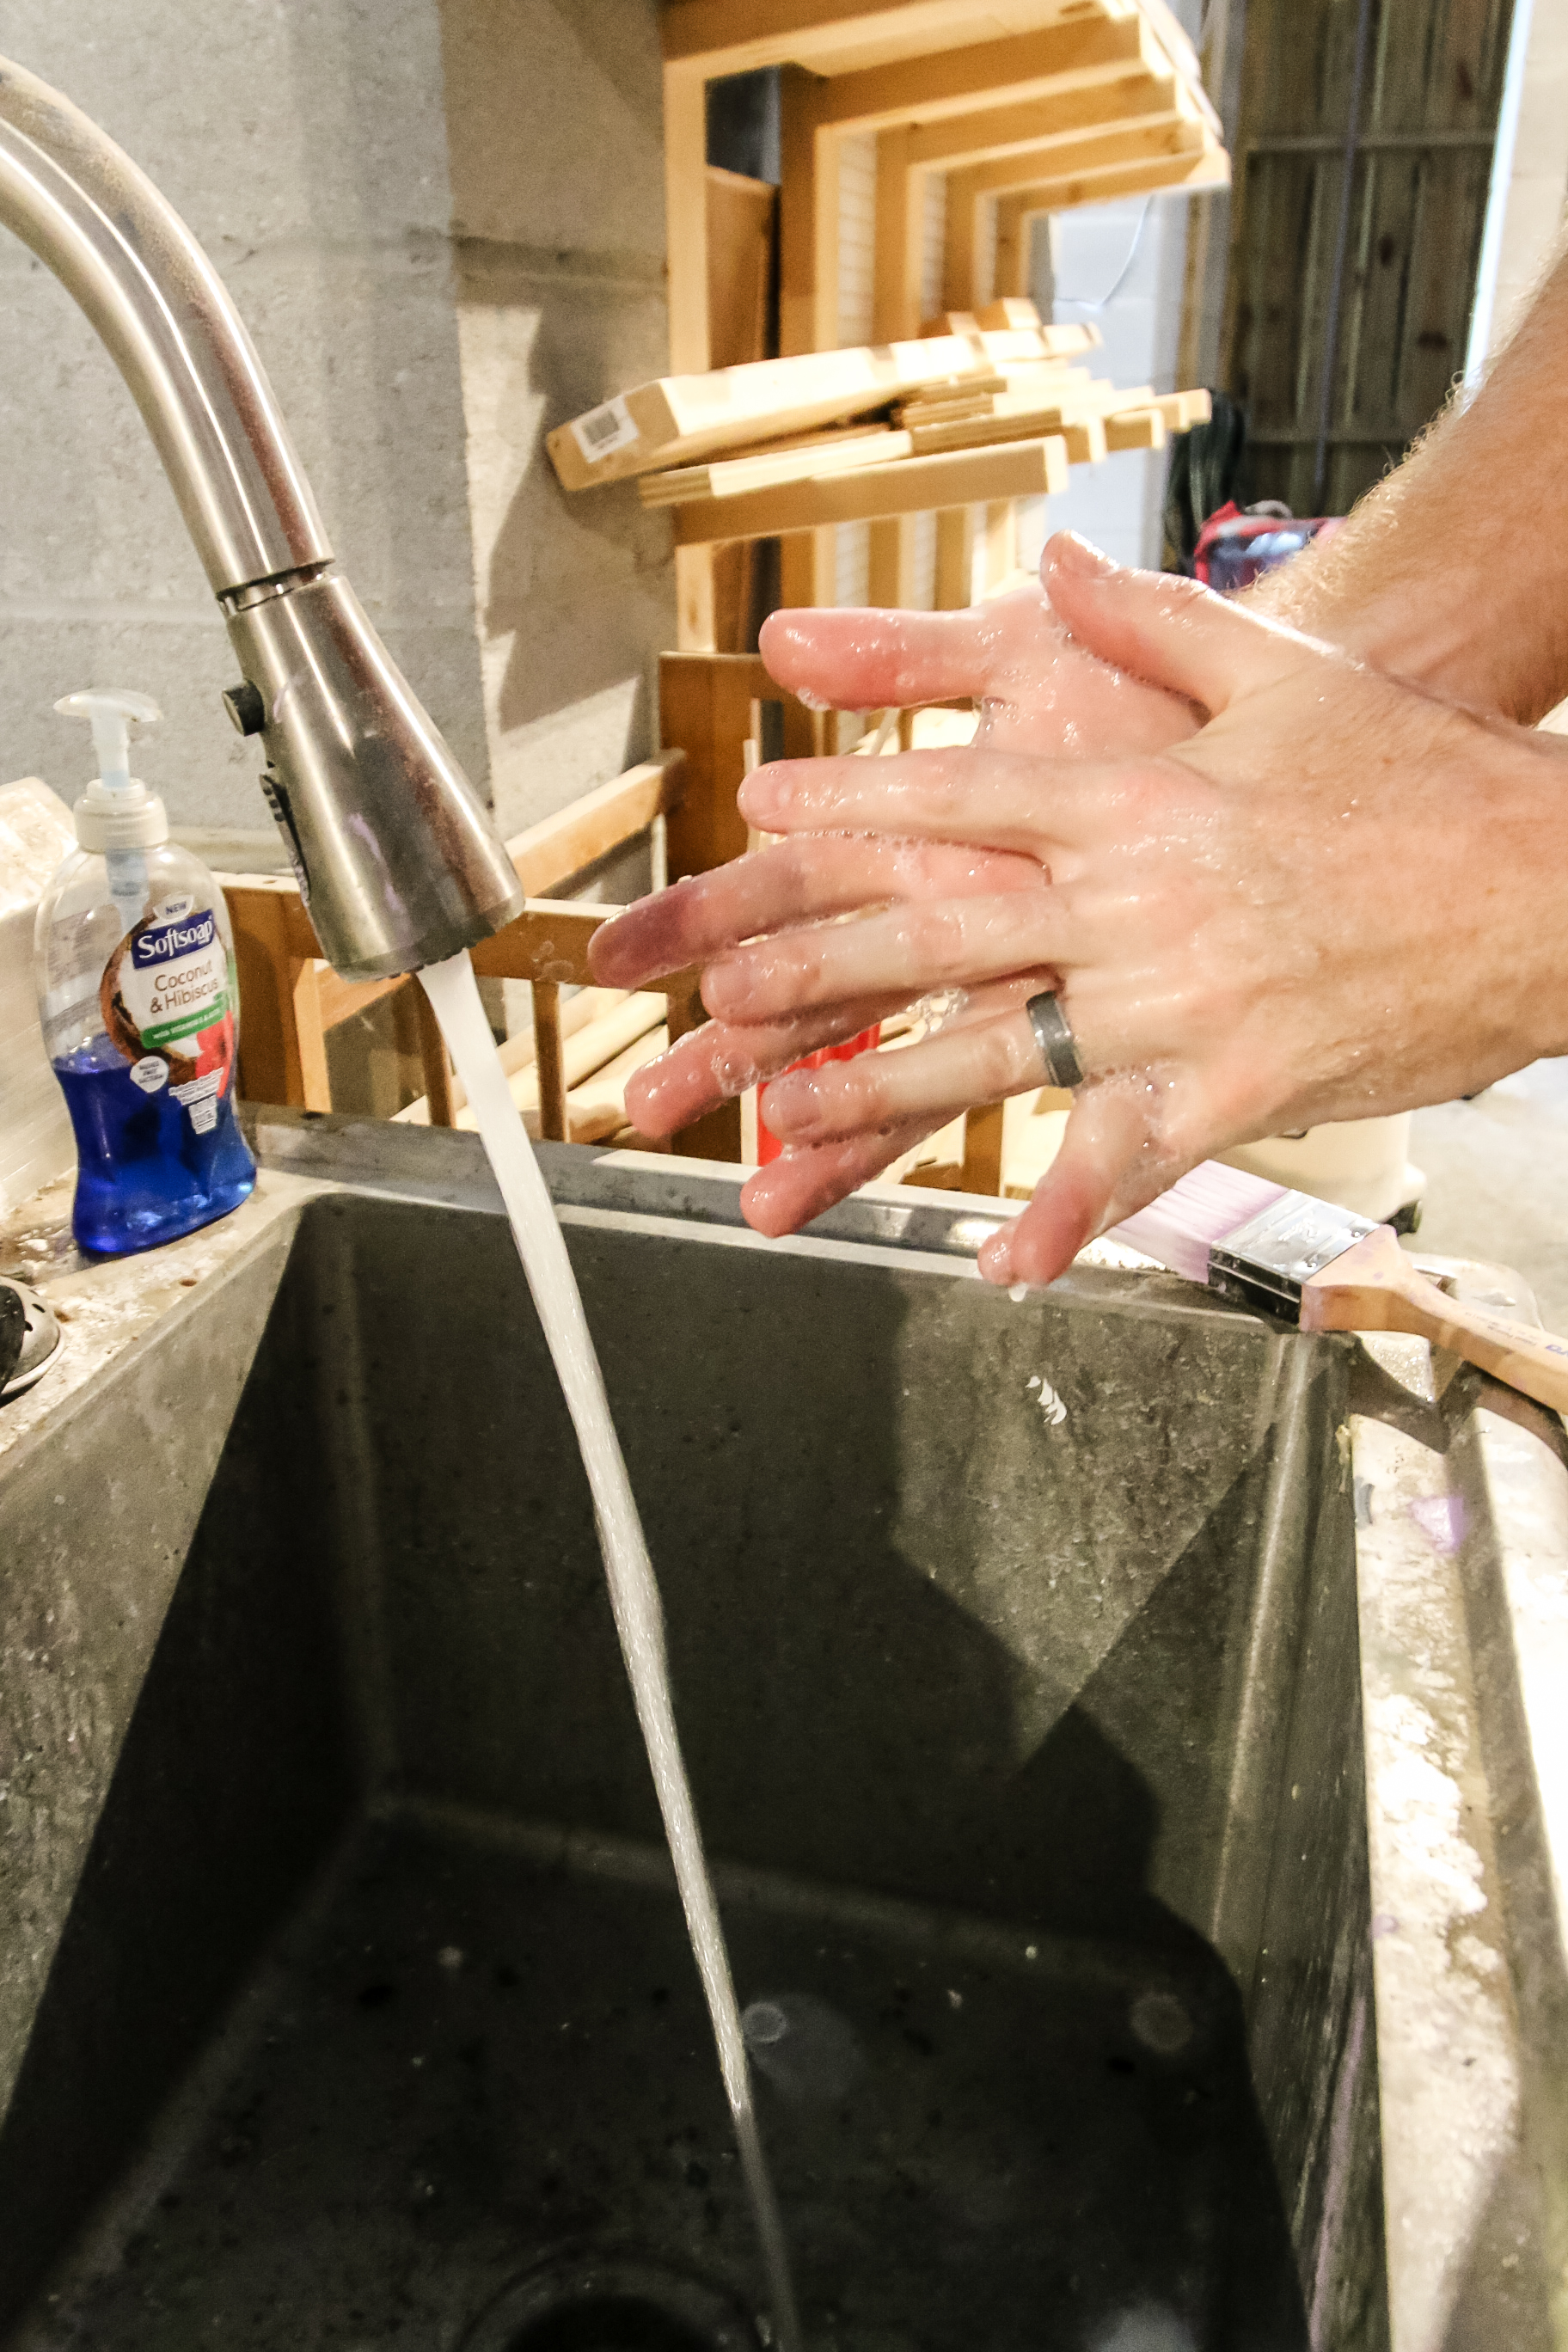 washing hands in garage utility sink